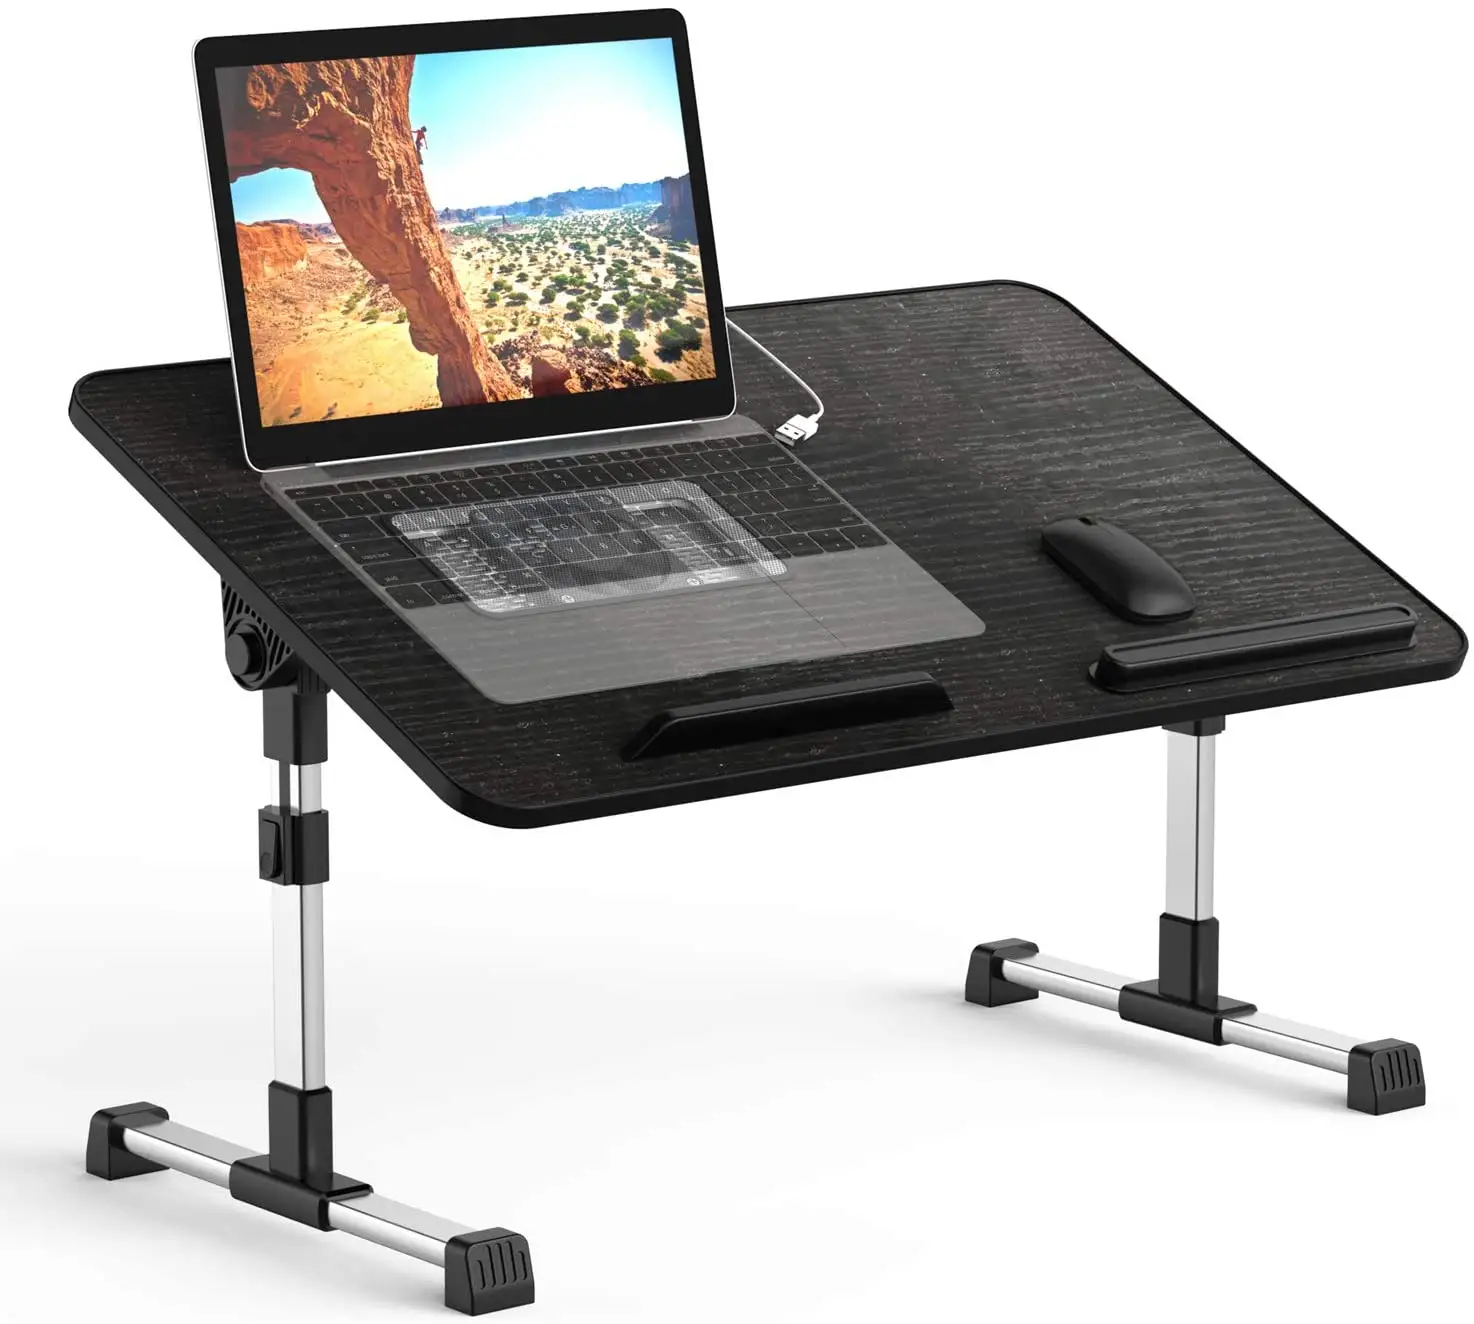 Laptop-Bettablage-Tisch, verstellbarer Laptopst änder, tragbare Computer tische mit faltbaren Beinen